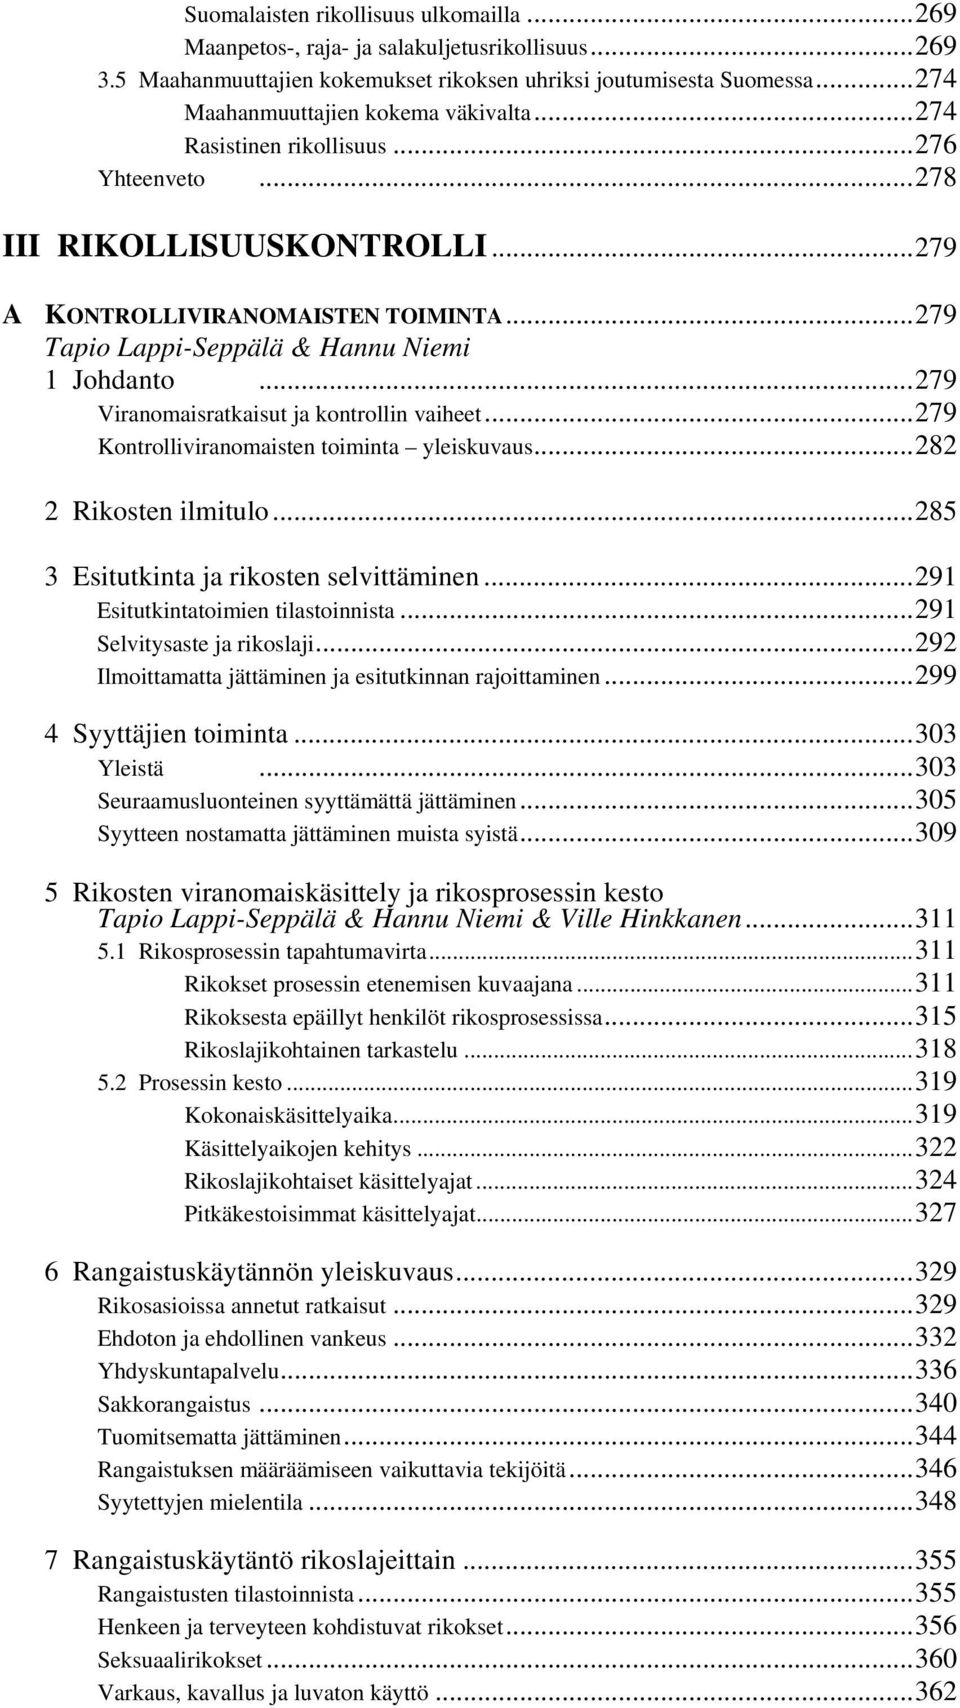 ..279 Tapio Lappi-Seppälä & Hannu Niemi 1 Johdanto...279 Viranomaisratkaisut ja kontrollin vaiheet...279 Kontrolliviranomaisten toiminta yleiskuvaus...282 2 Rikosten ilmitulo.